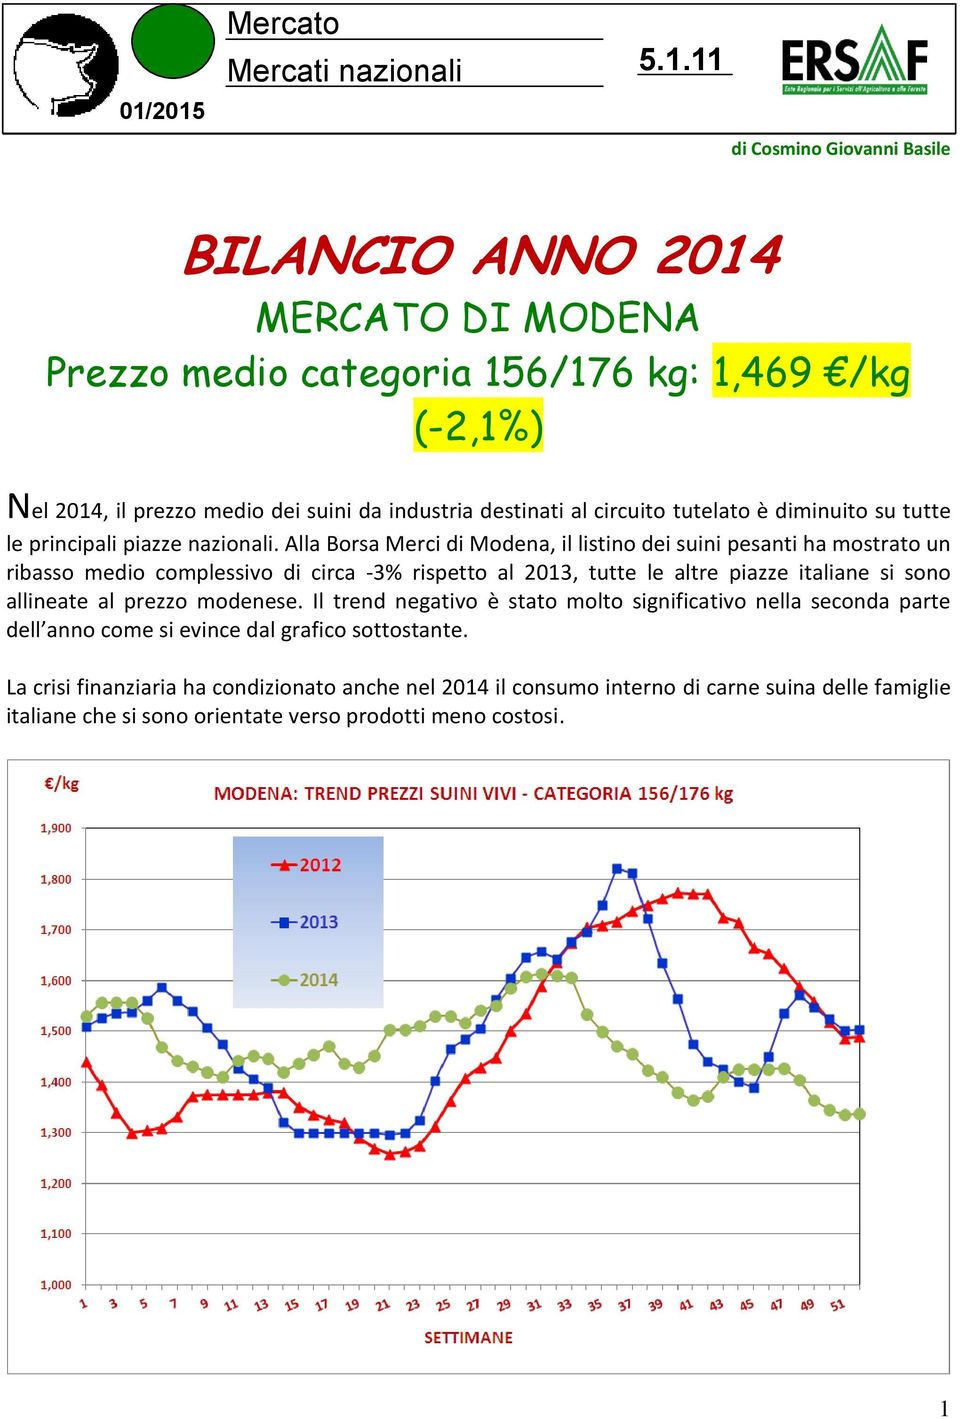 Alla Borsa Merci di Modena, il listino dei suini pesanti ha mostrato un ribasso medio complessivo di circa -3% rispetto al 2013, tutte le altre piazze italiane si sono allineate al prezzo